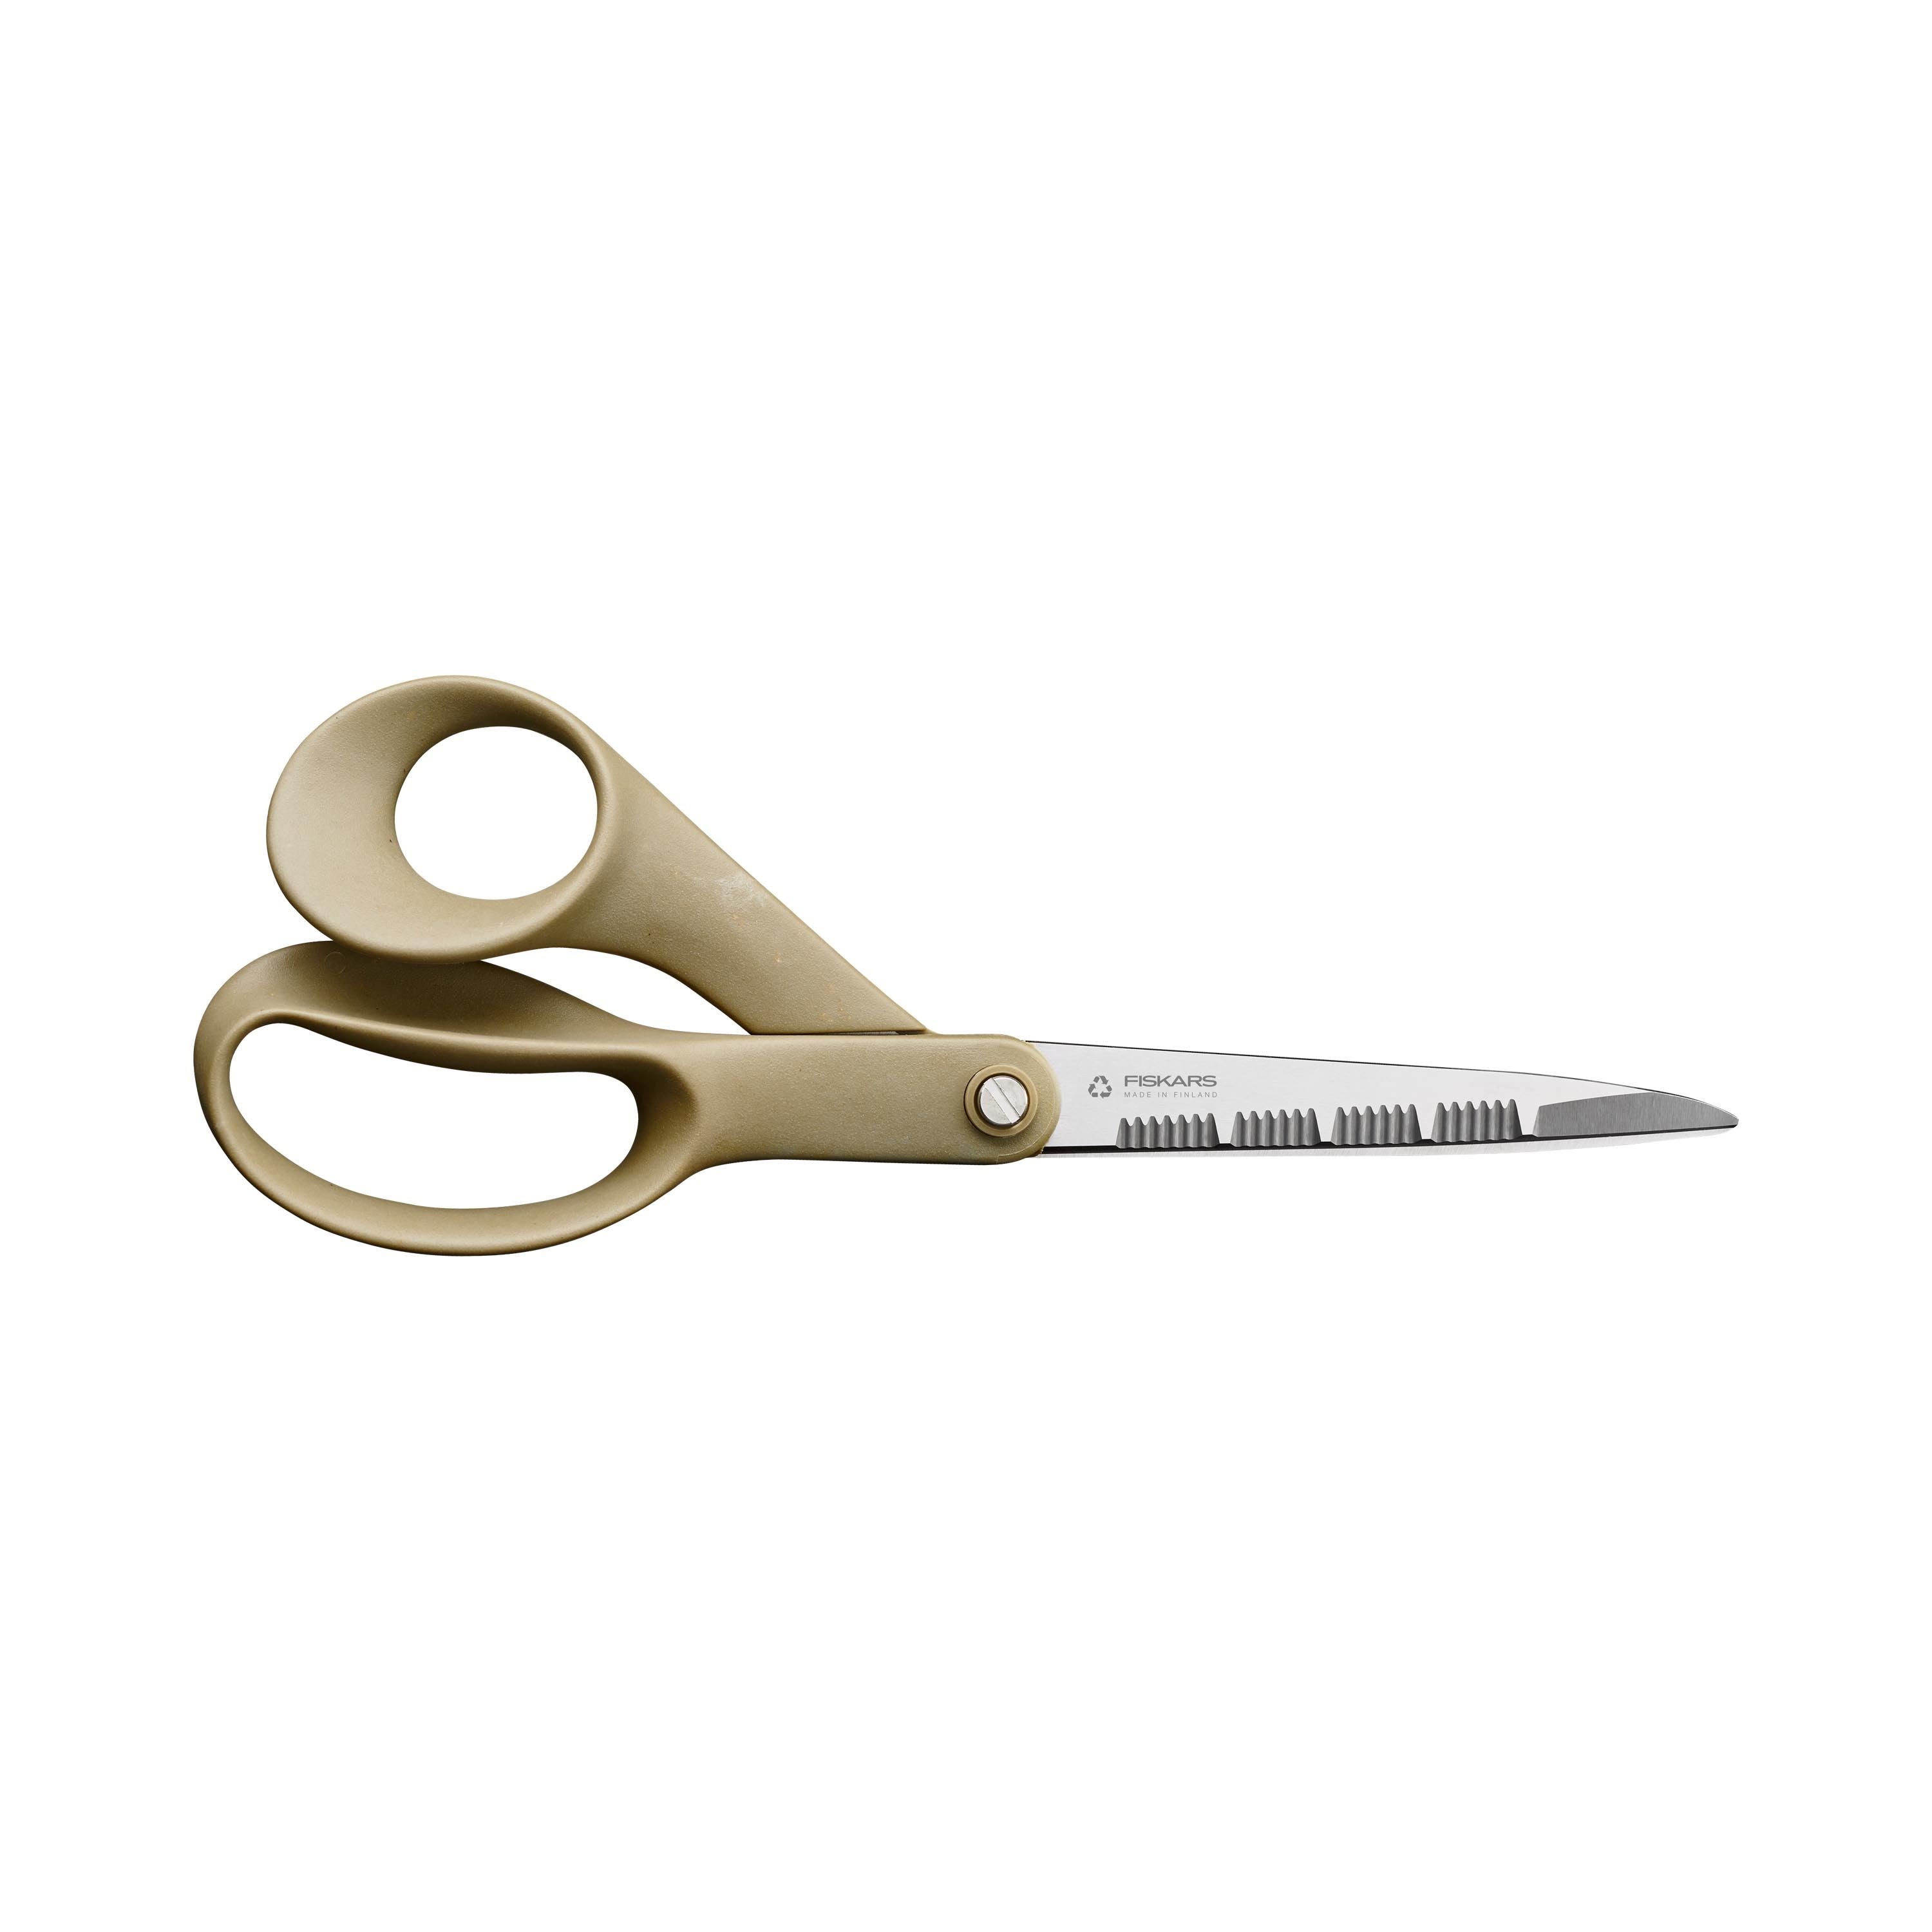 IDS-LA Heavy Duty Pattern Snip 12, Pattern shears, Pattern Making Scissors  : Arts, Crafts & Sewing 